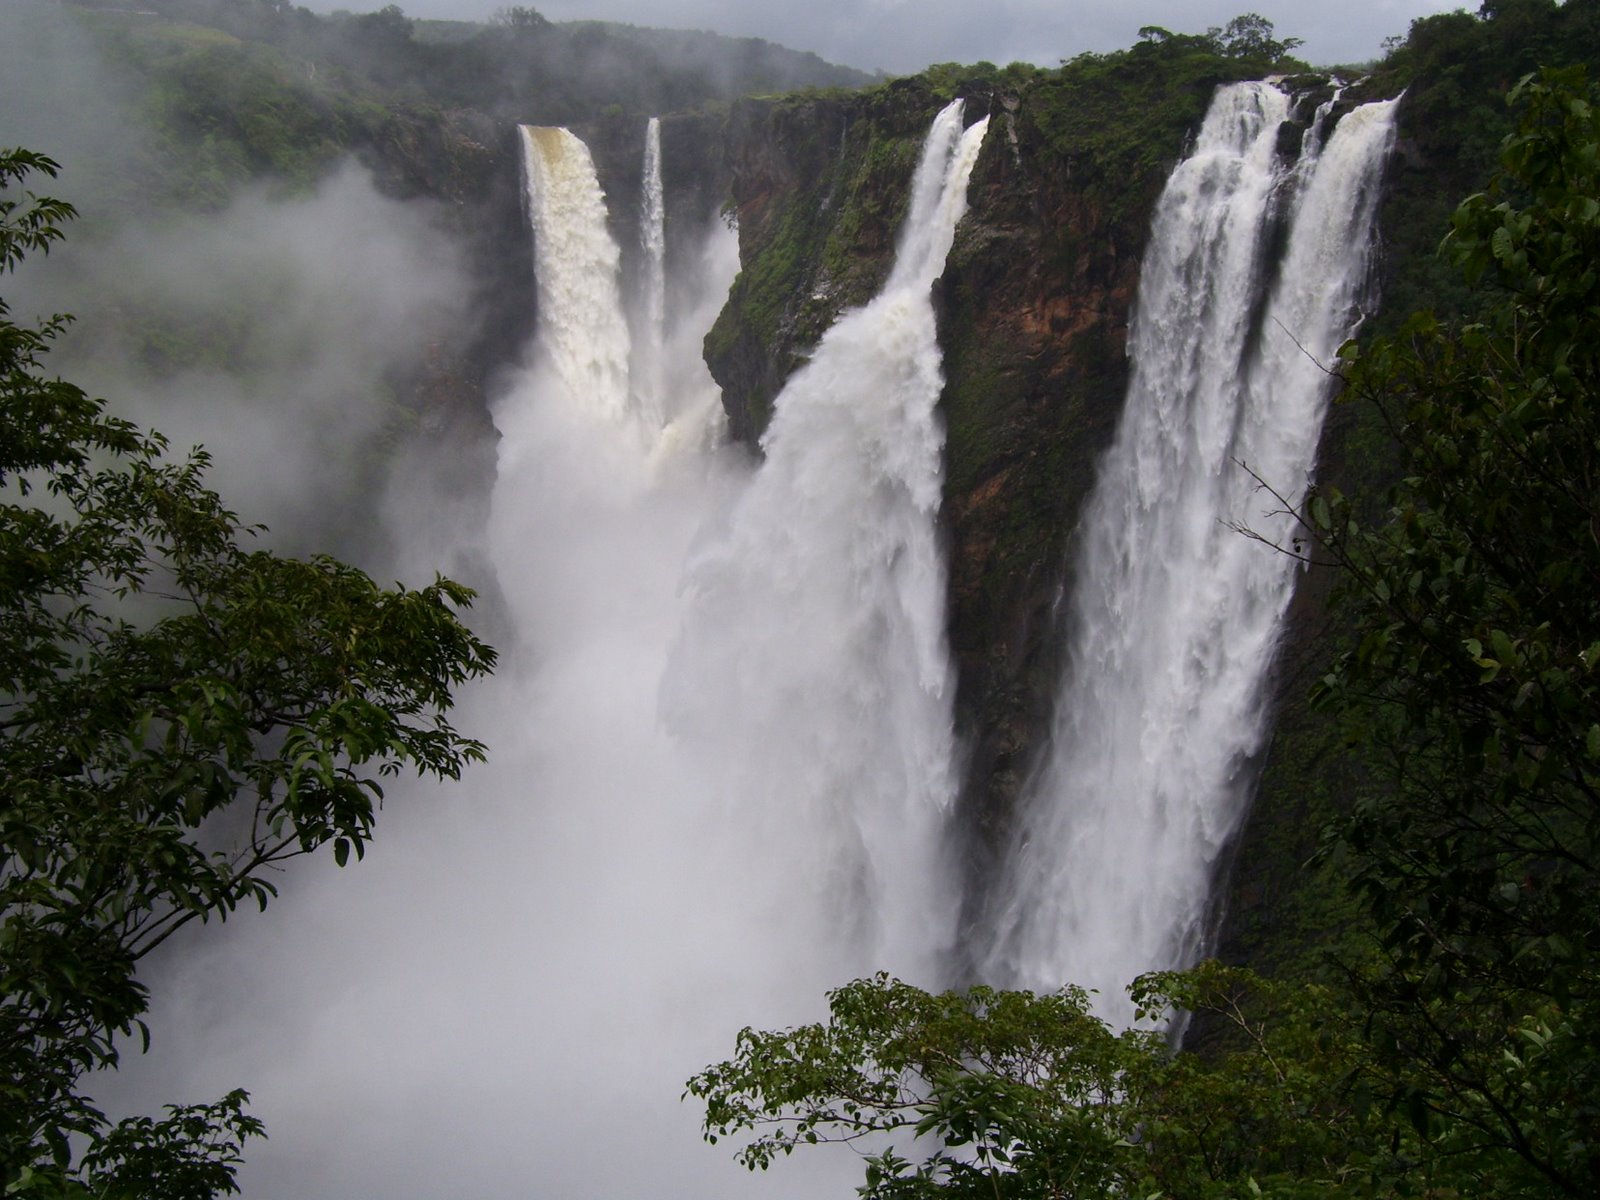 Download this Jog Falls Karnataka picture